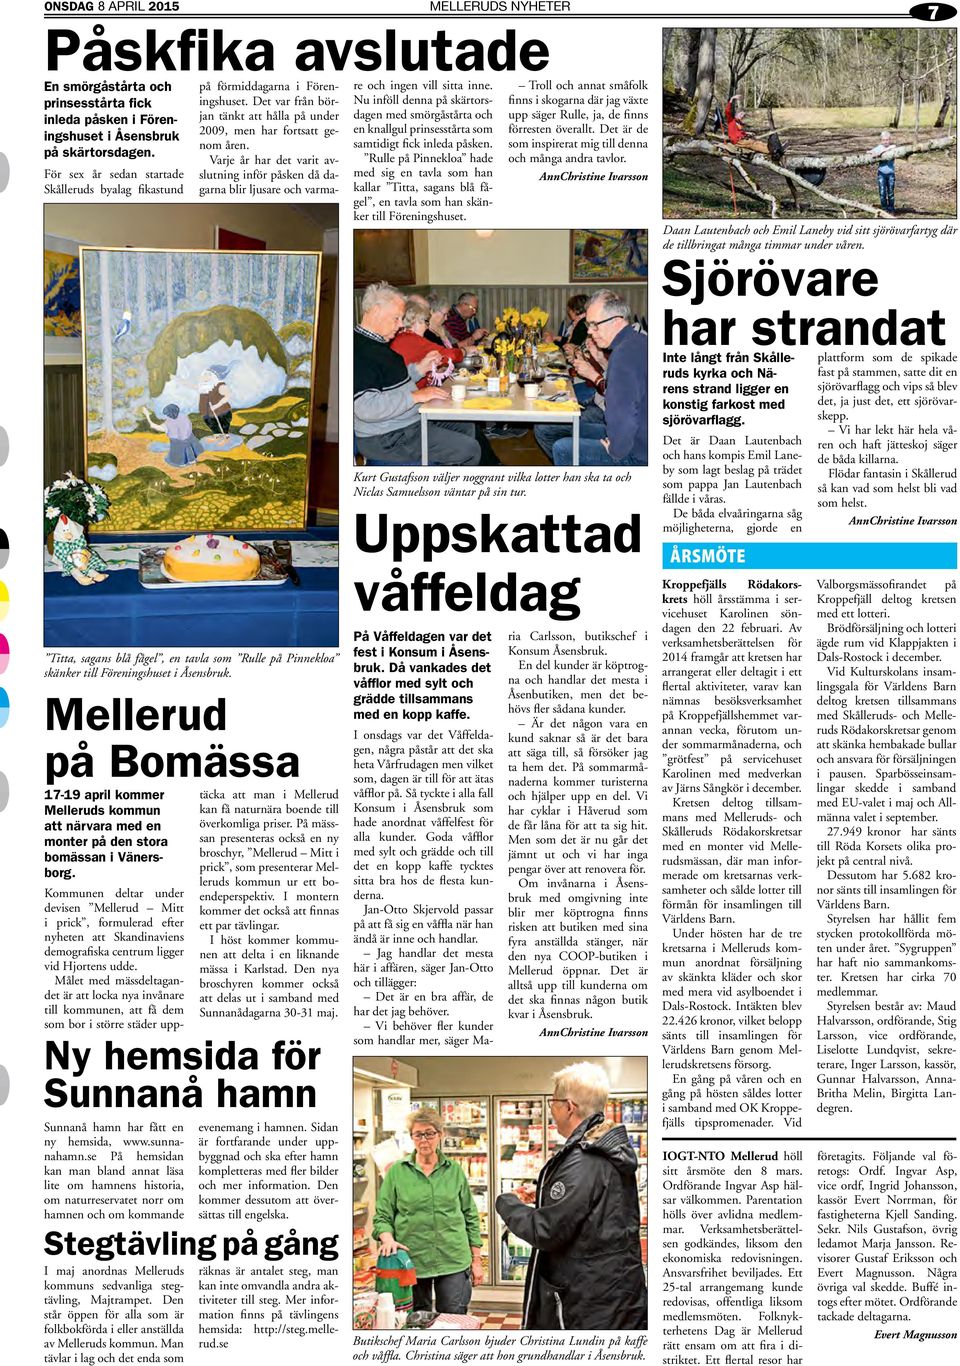 Ny hemsida för Sunnanå hamn Sunnanå hamn har fått en ny hemsida, www.sunnanahamn.